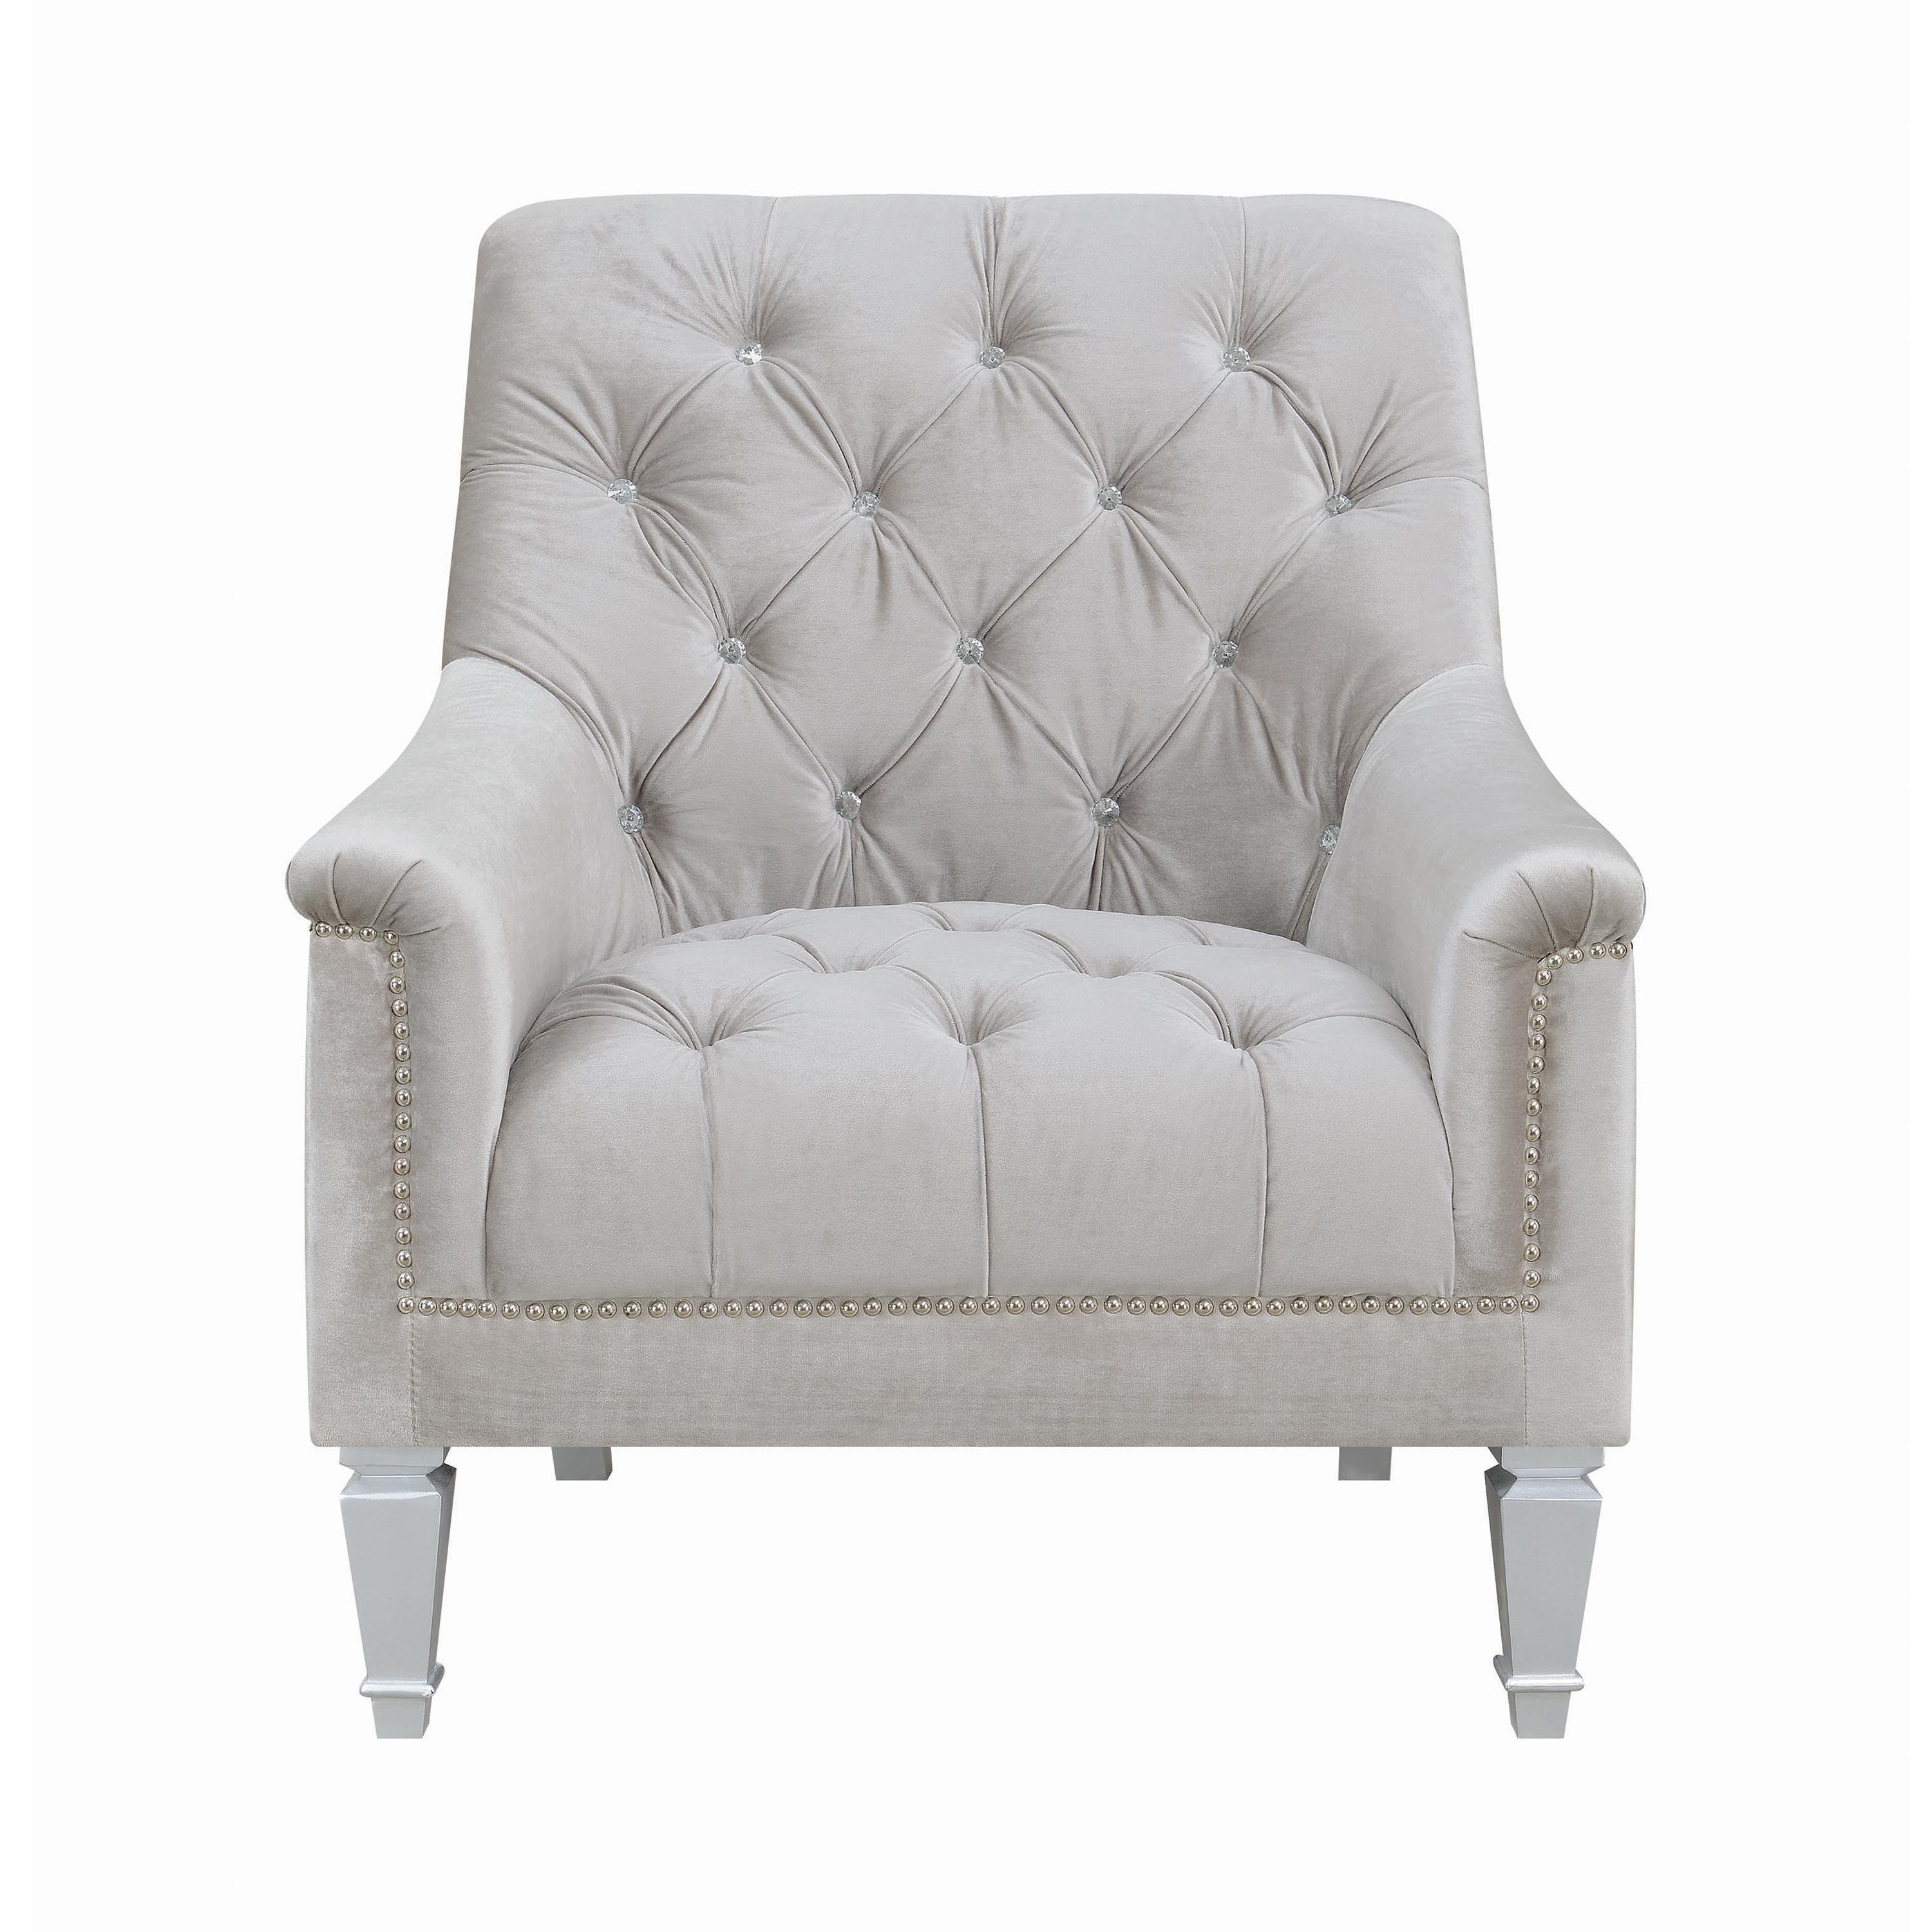 Classic Arm Chair 508463 Avonlea 508463 in Gray Velvet